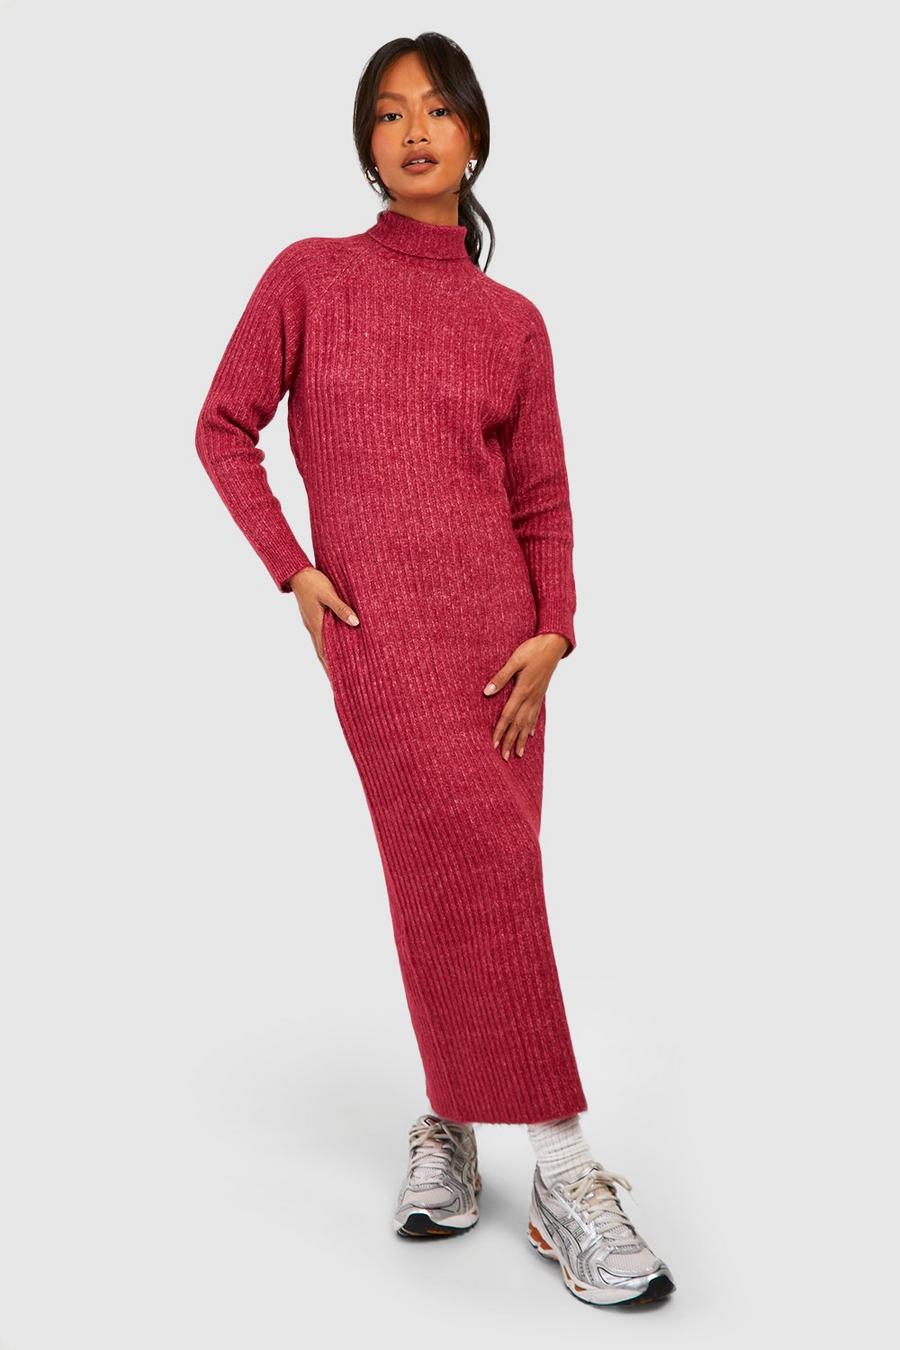 Raspberry Soft Rib Knit Turtleneck Midaxi Jumper Dress